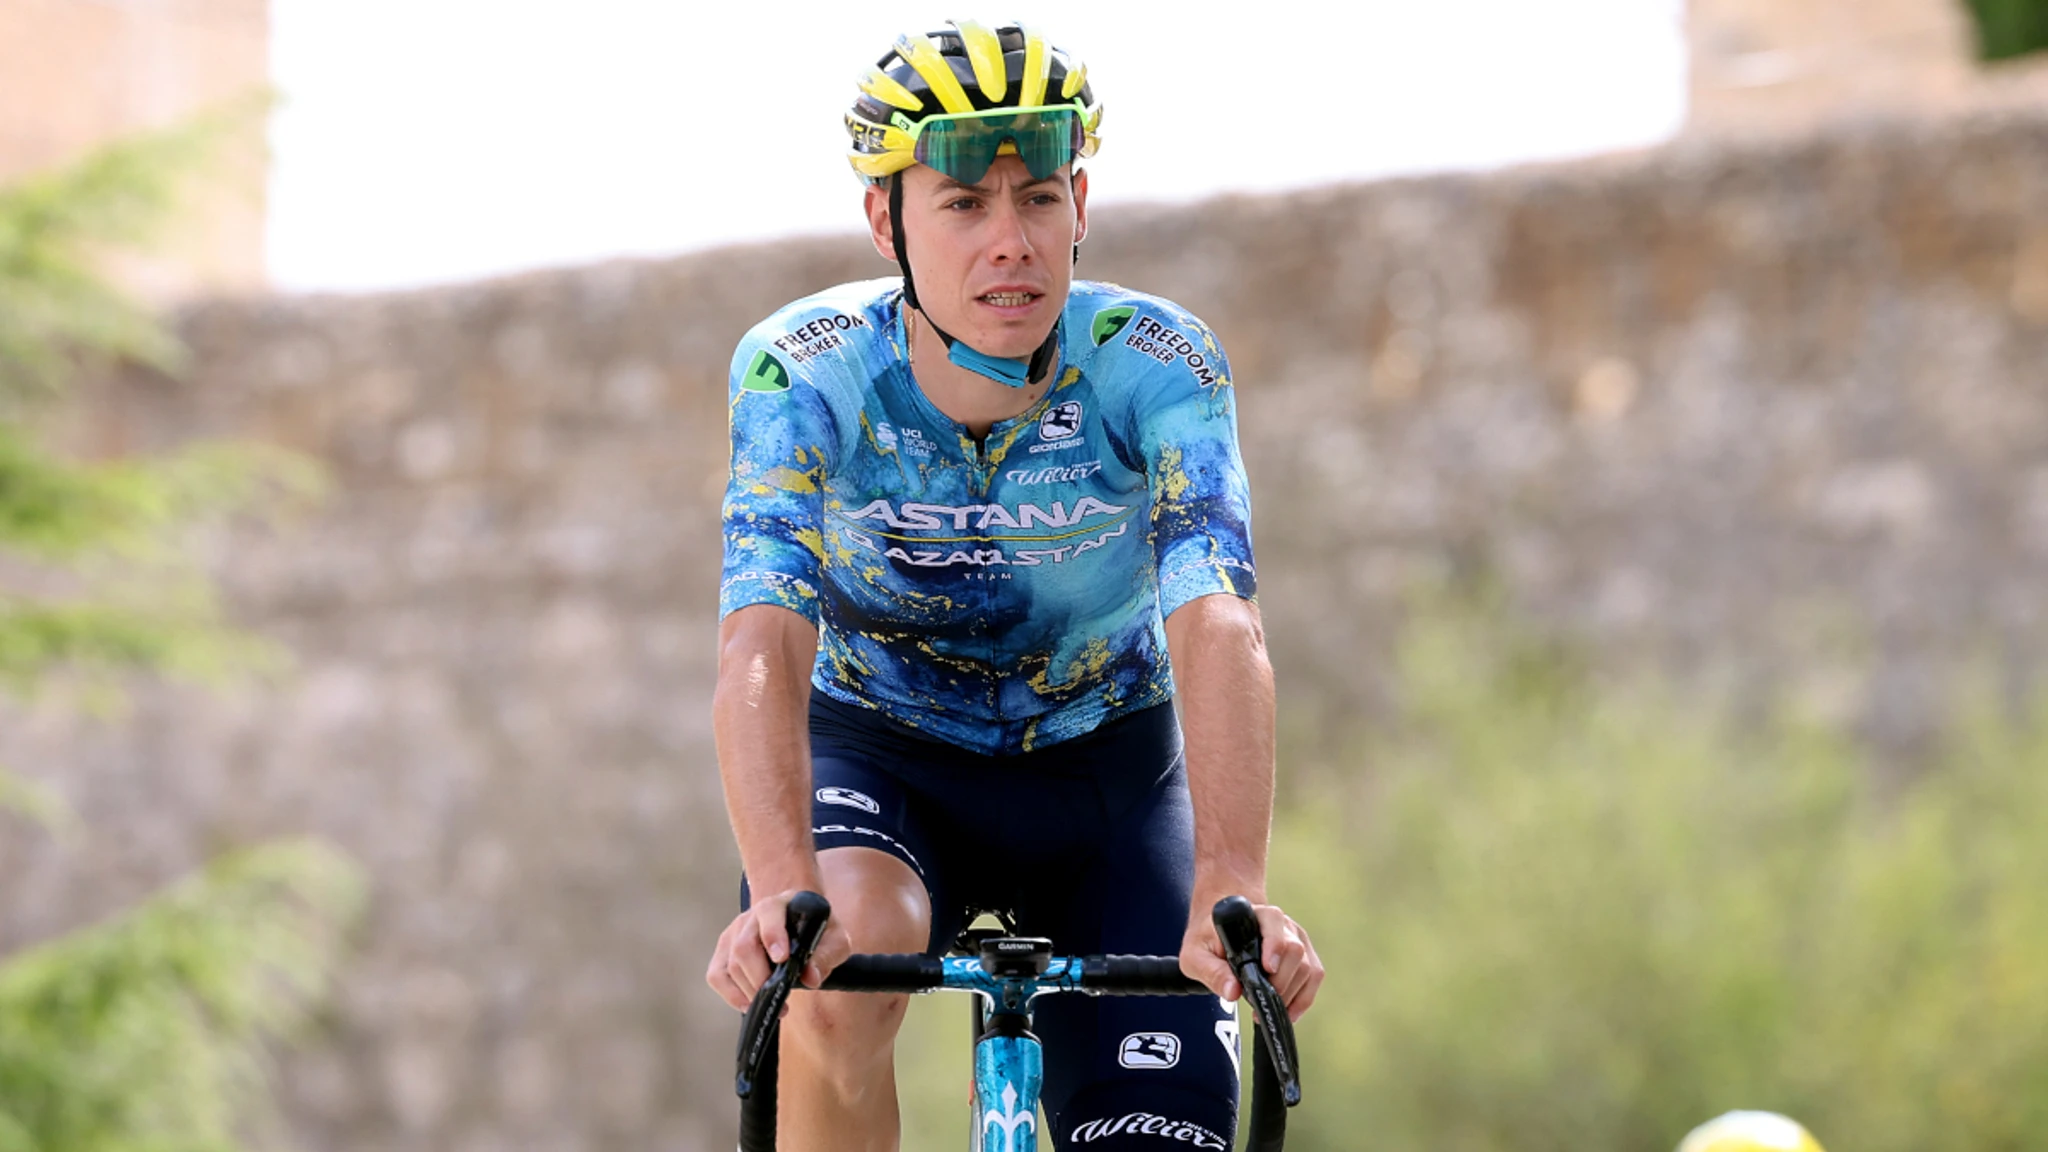 Paris-Nice stages winner de la Cruz joins Q36.5 team